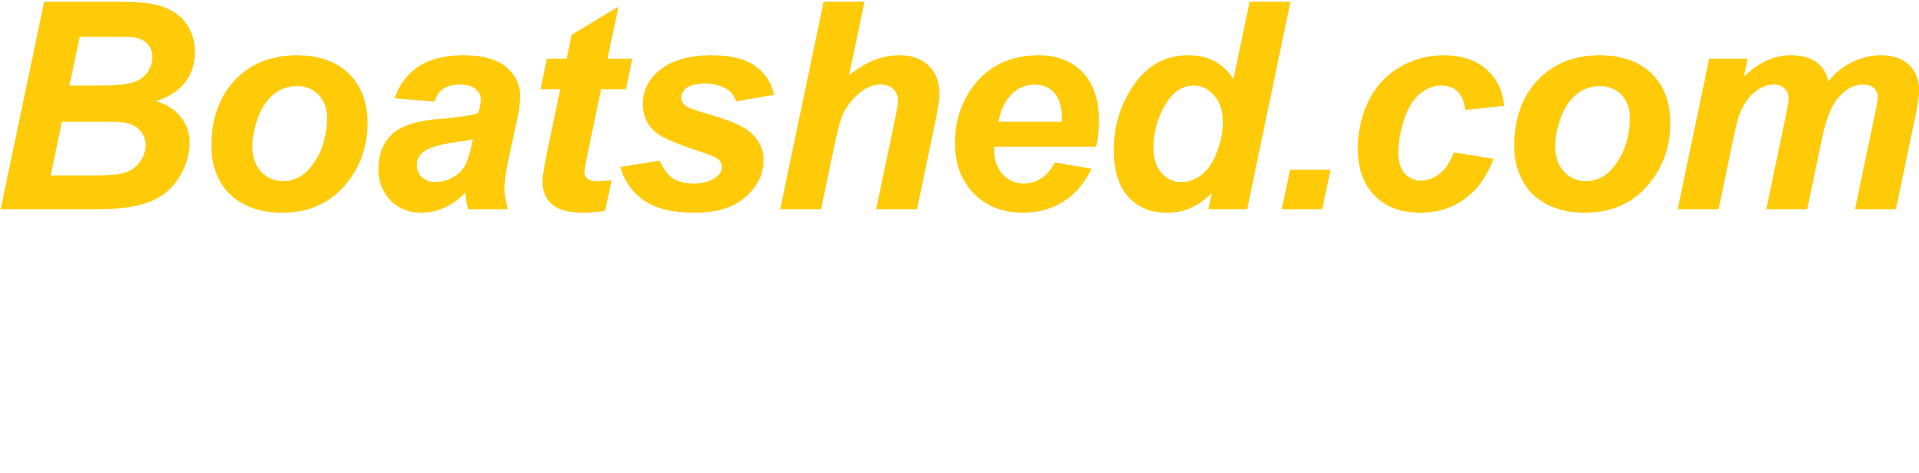 Boatshed.com